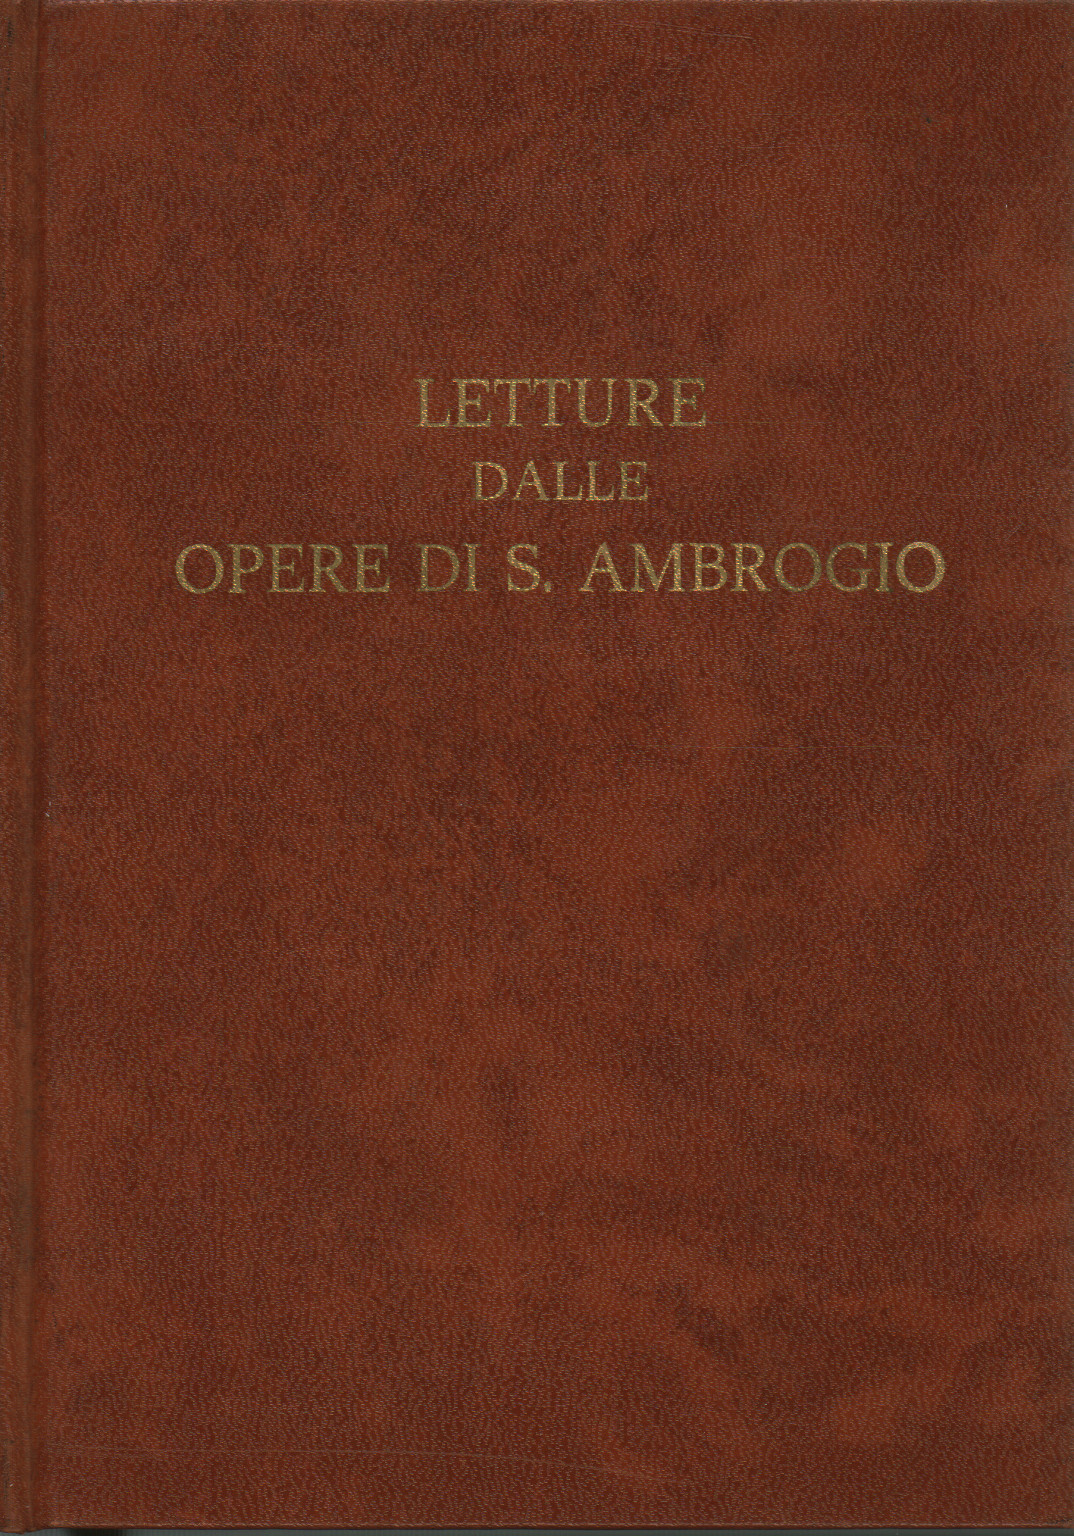 Lesungen aus den Werken von S. Ambrogio, s.zu.